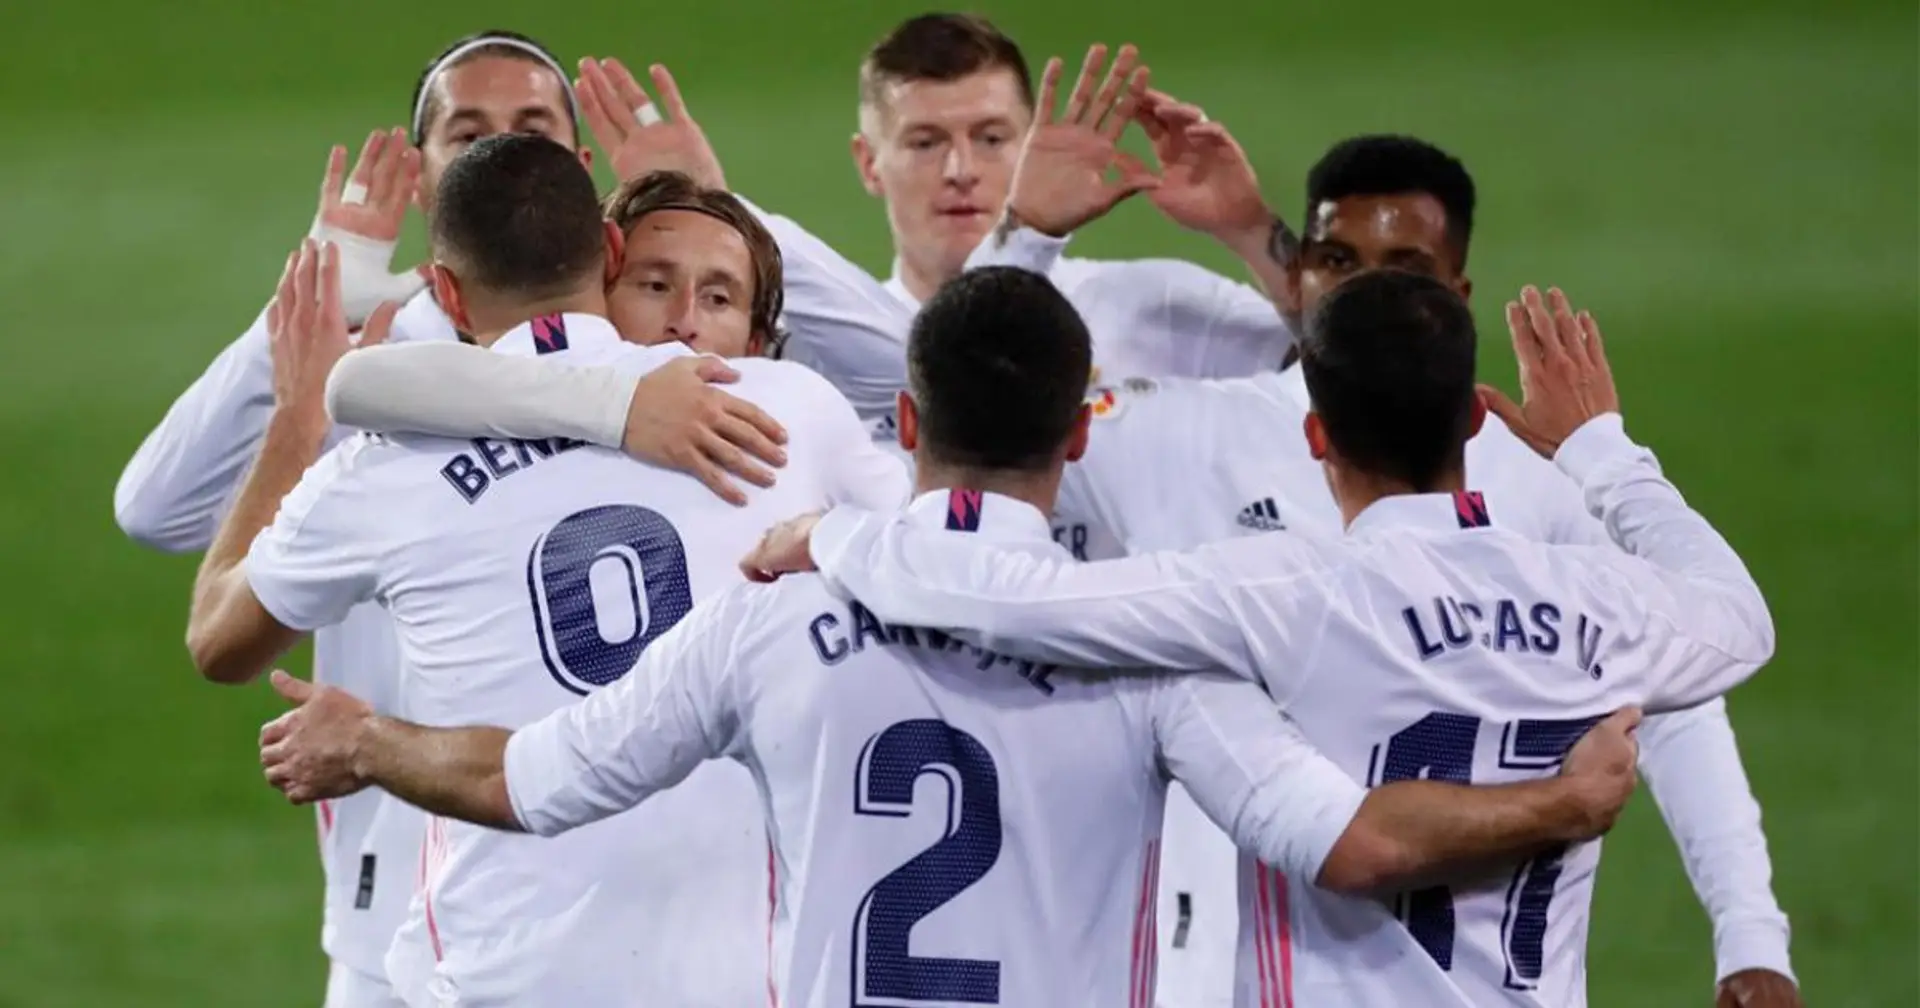 🔥 OFFICIEL: Le XI du Real Madrid contre Celta Vigo dévoilé